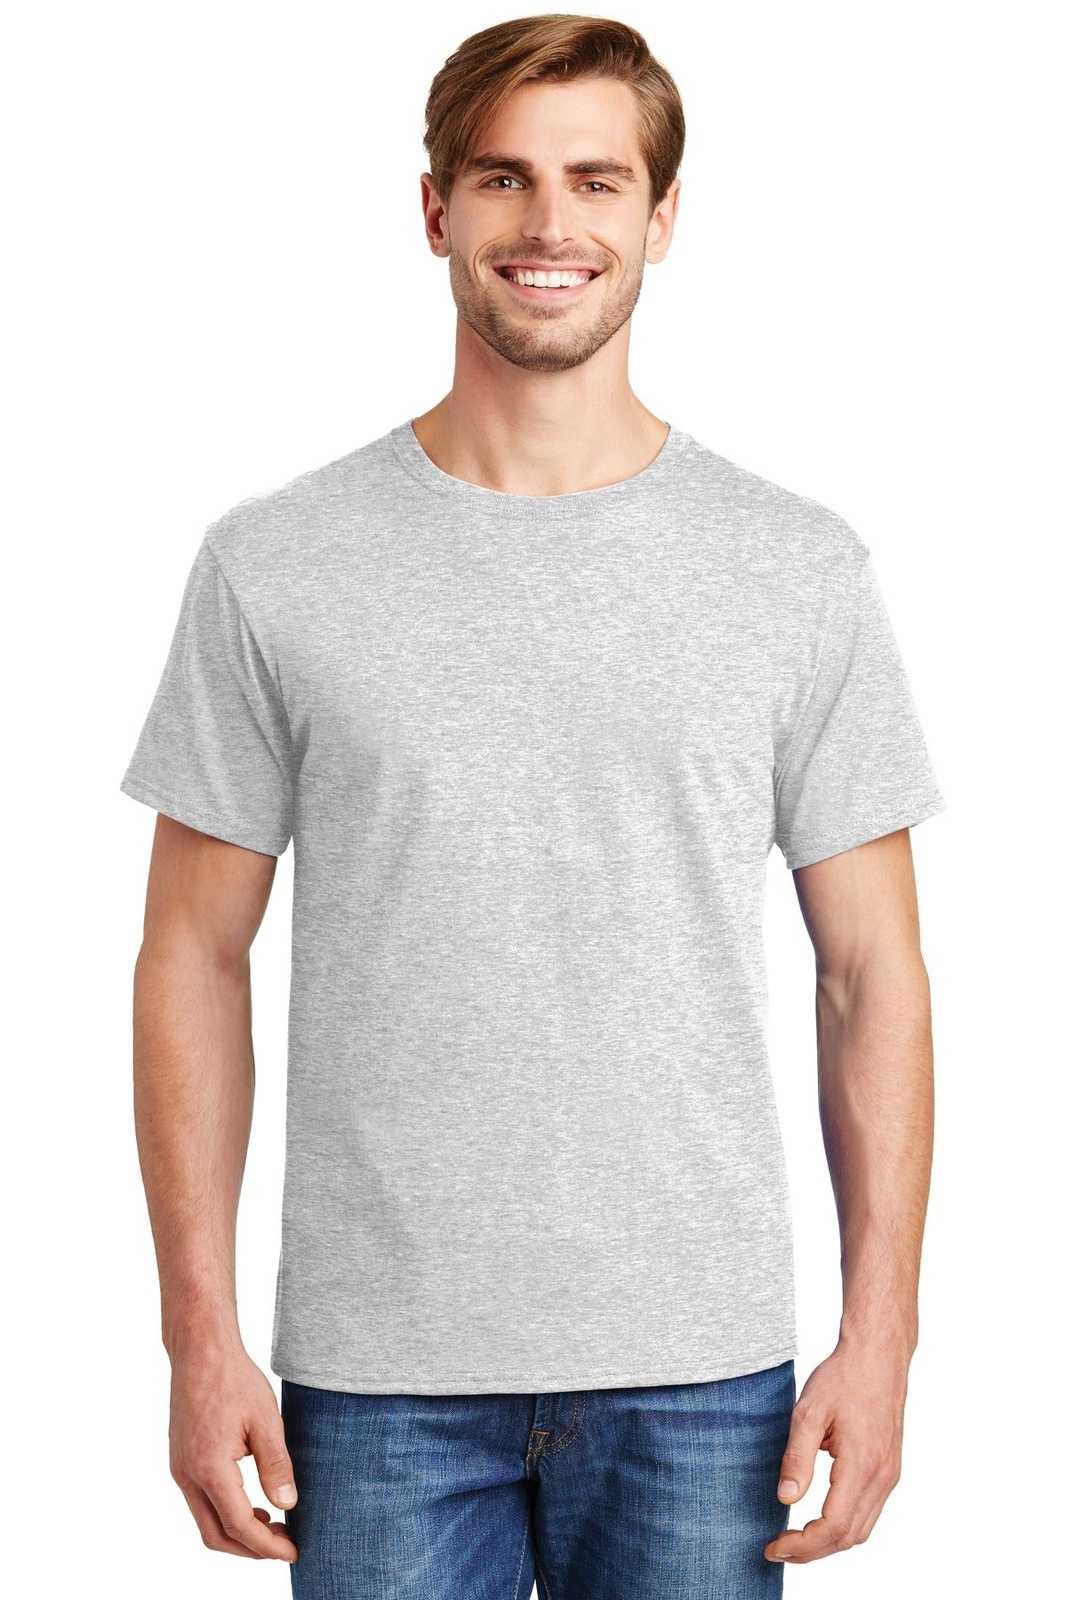 Hanes 5280 Comfortsoft 100% Cotton T-Shirt - Ash - HIT a Double